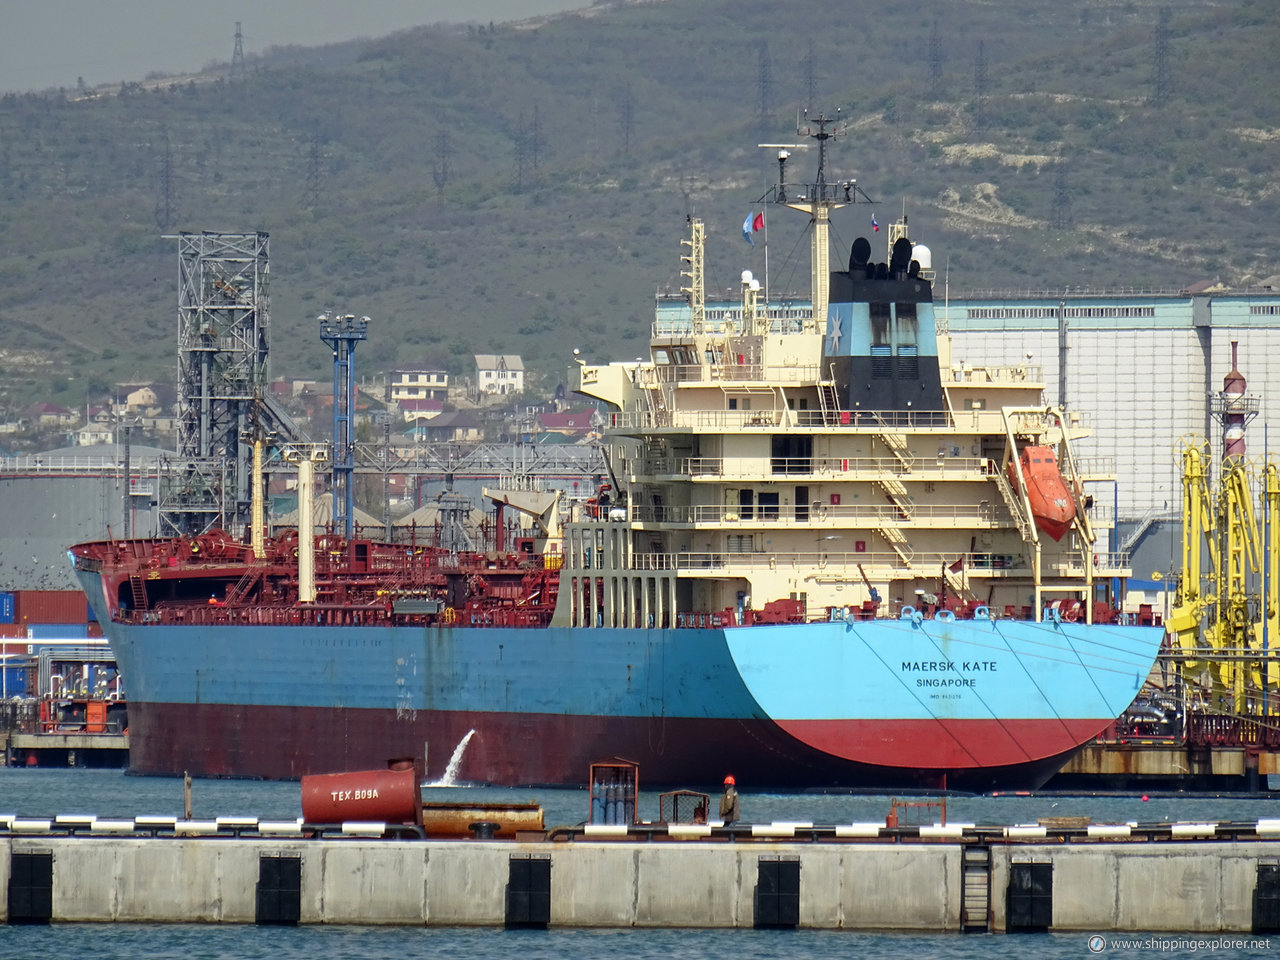 Maersk Kate